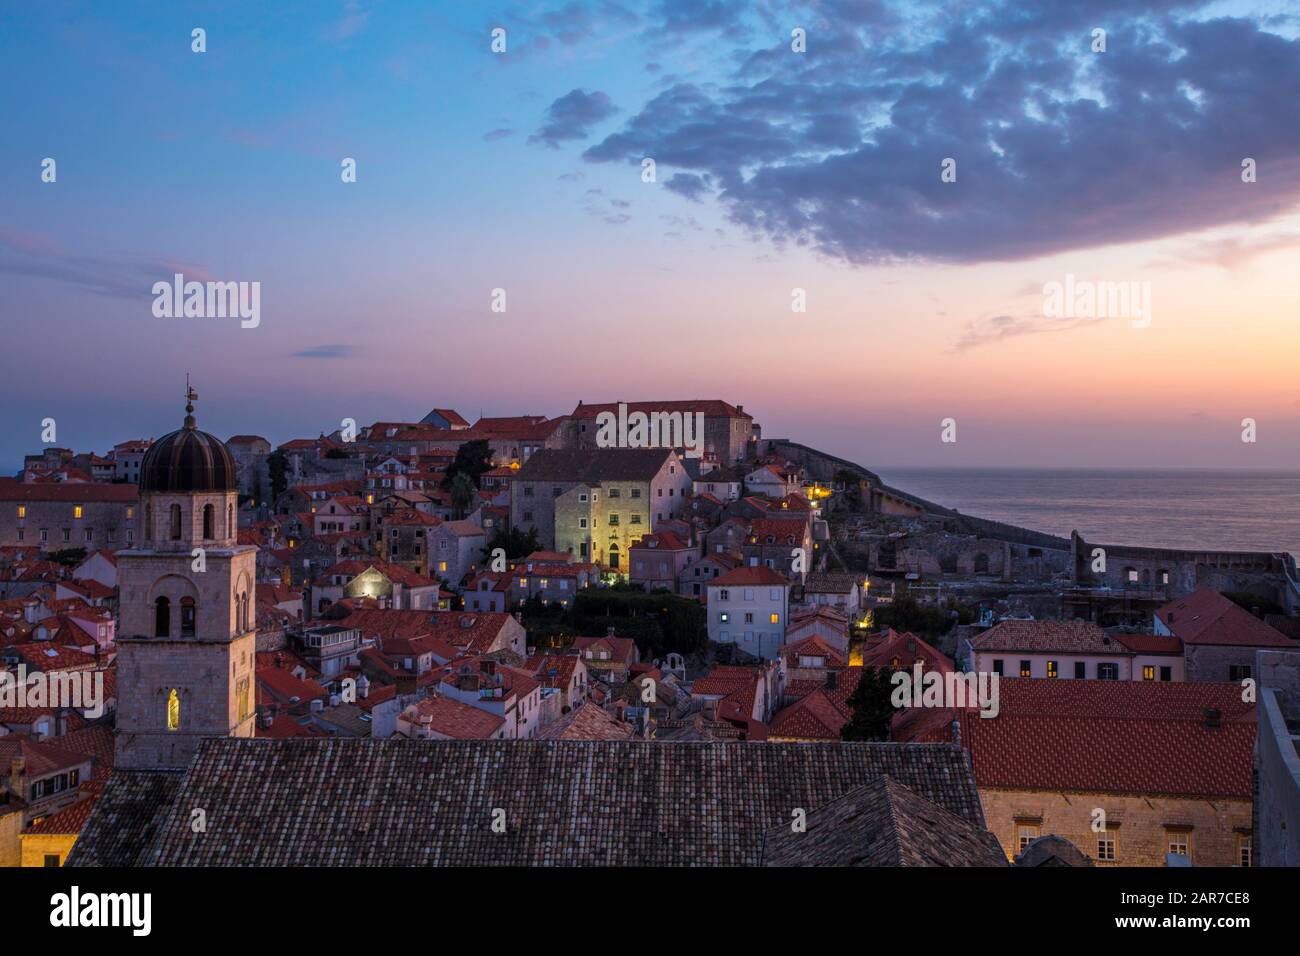 Tramonto sulla città vecchia di Dubrovnik, vista dalla cima delle mura della città, con la torre del monastero francescano in primo piano. Croazia Foto Stock